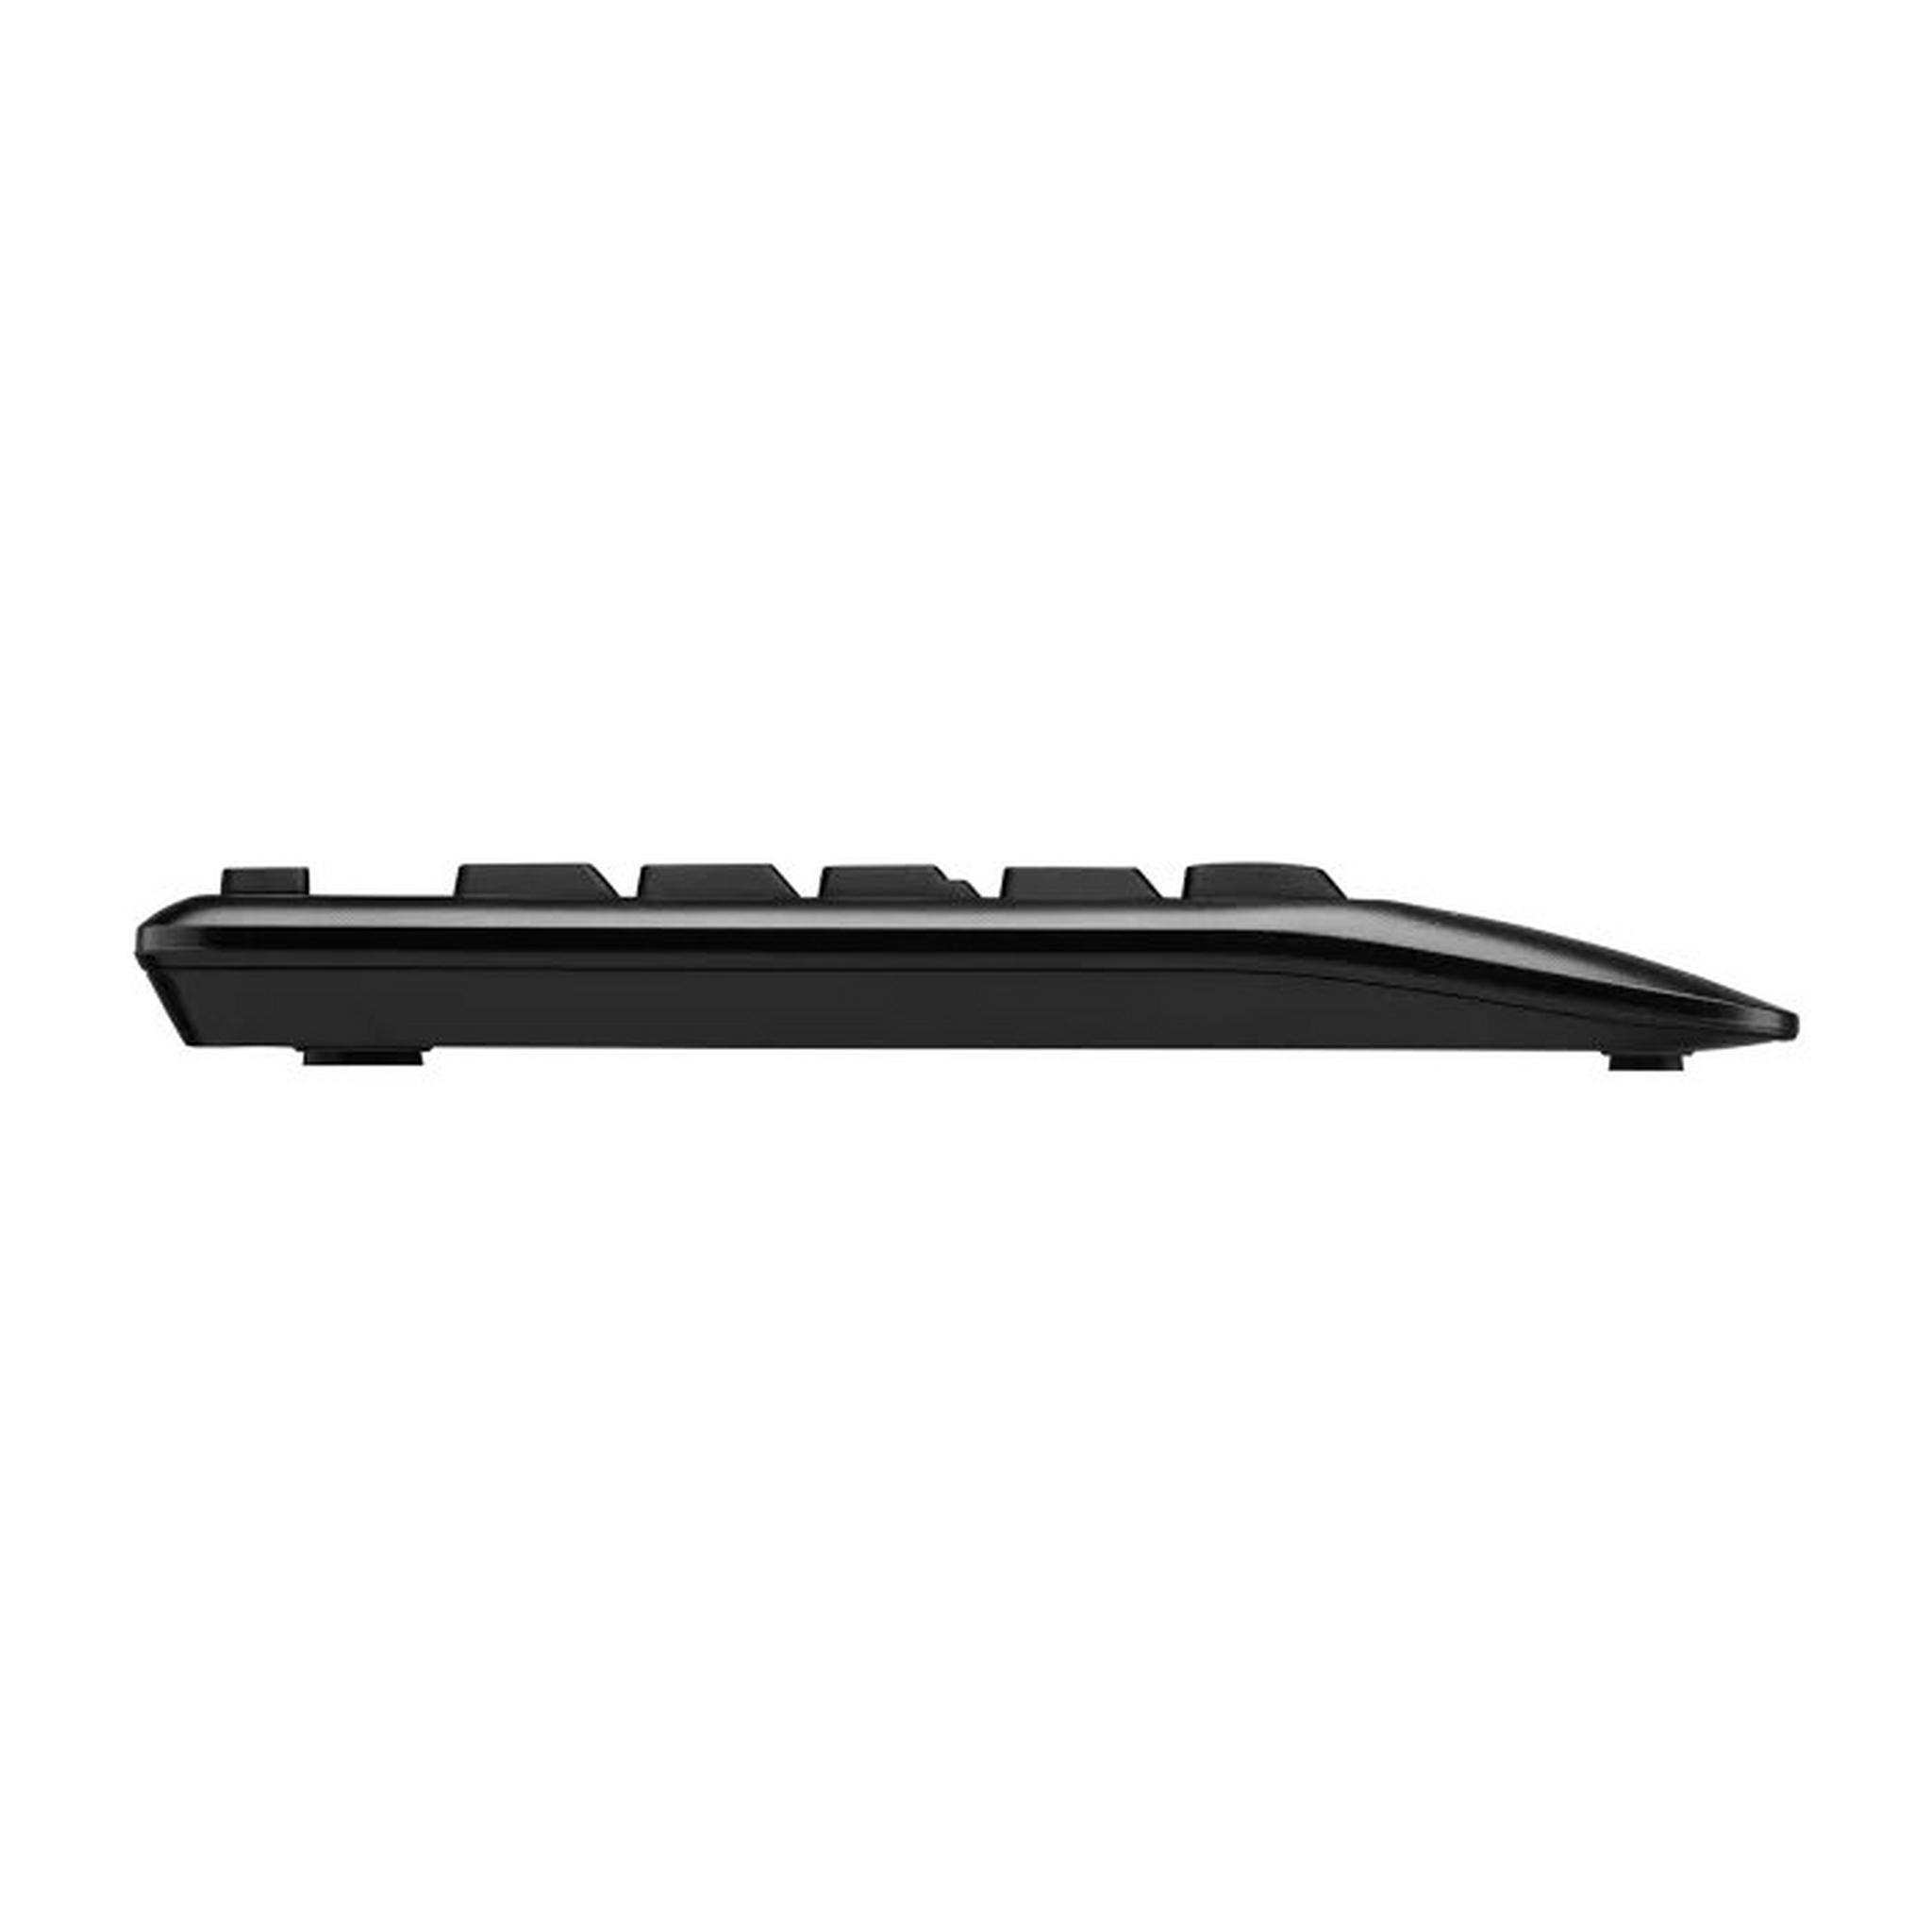 Logitech Wireless Keyboard and Mouse Combo, MK345 - Black